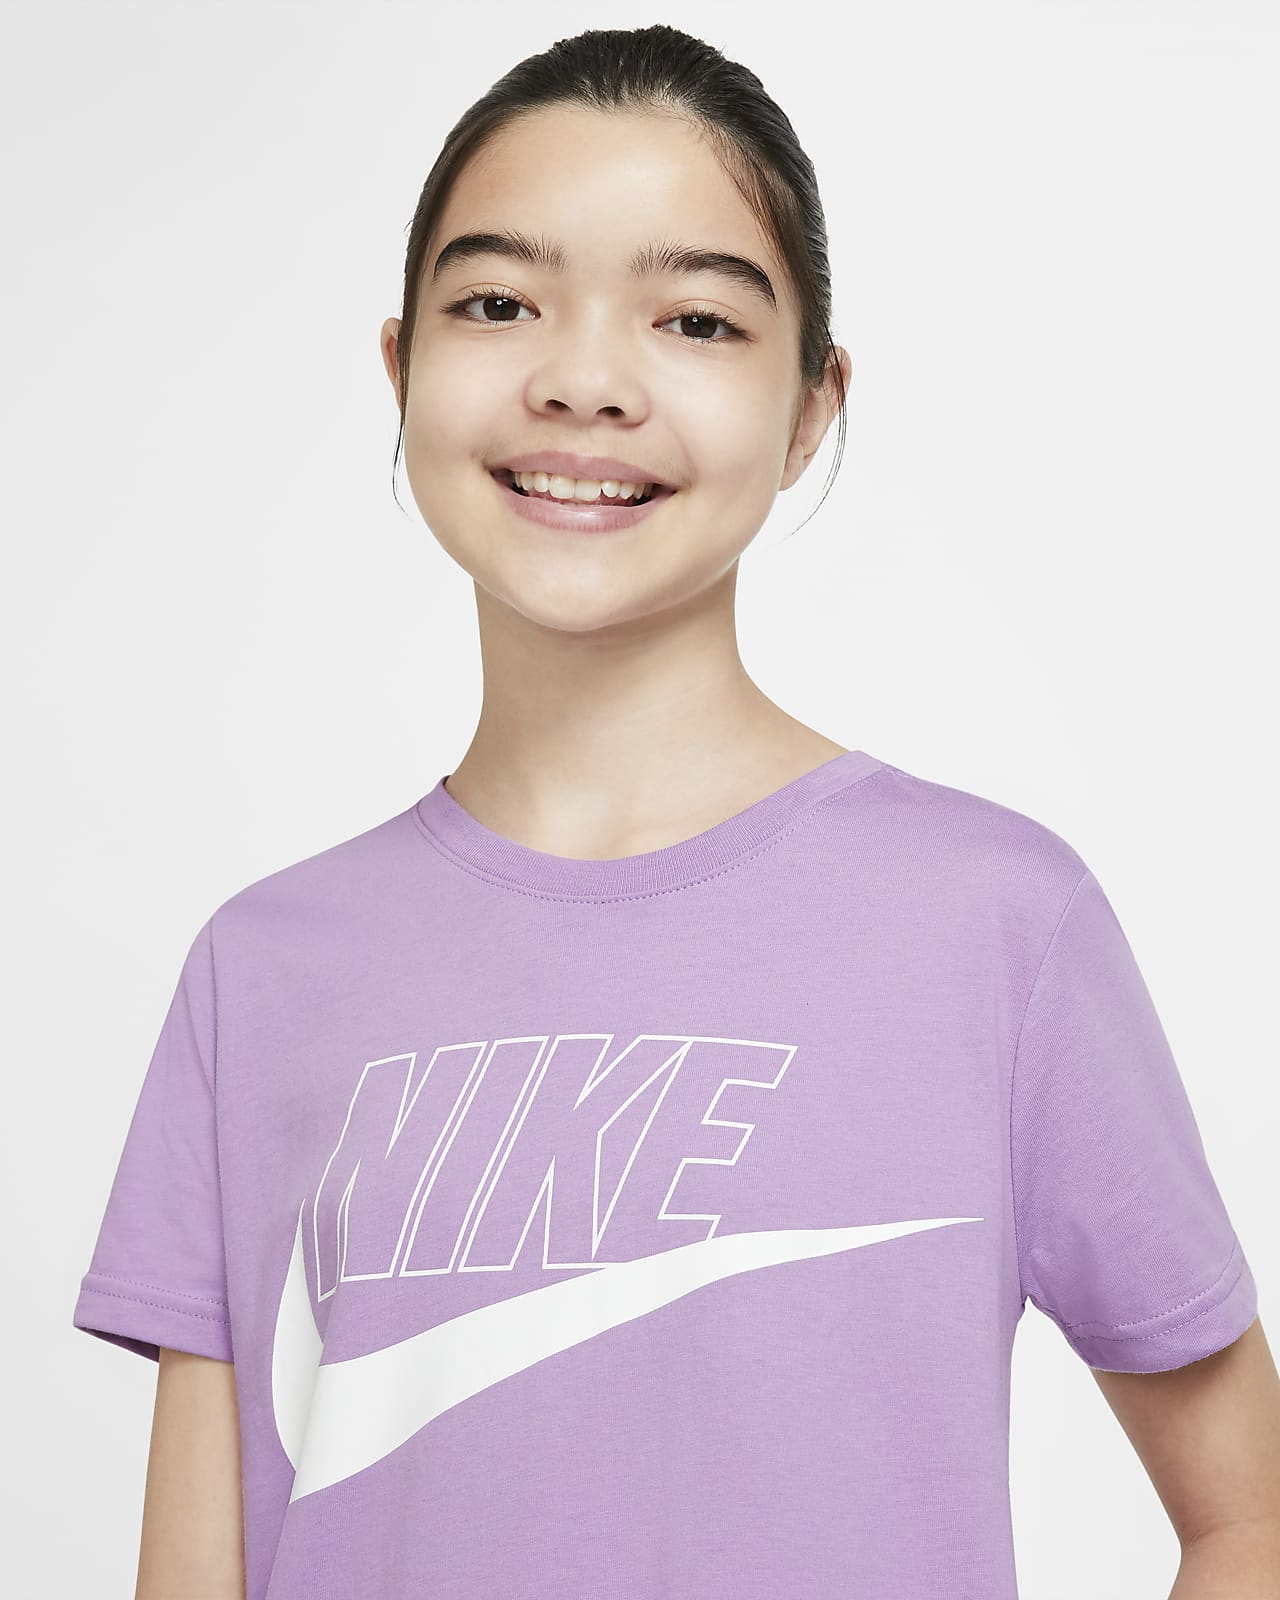 Nike公式 ナイキ スポーツウェア ジュニア ガールズ Tシャツドレス オンラインストア 通販サイト